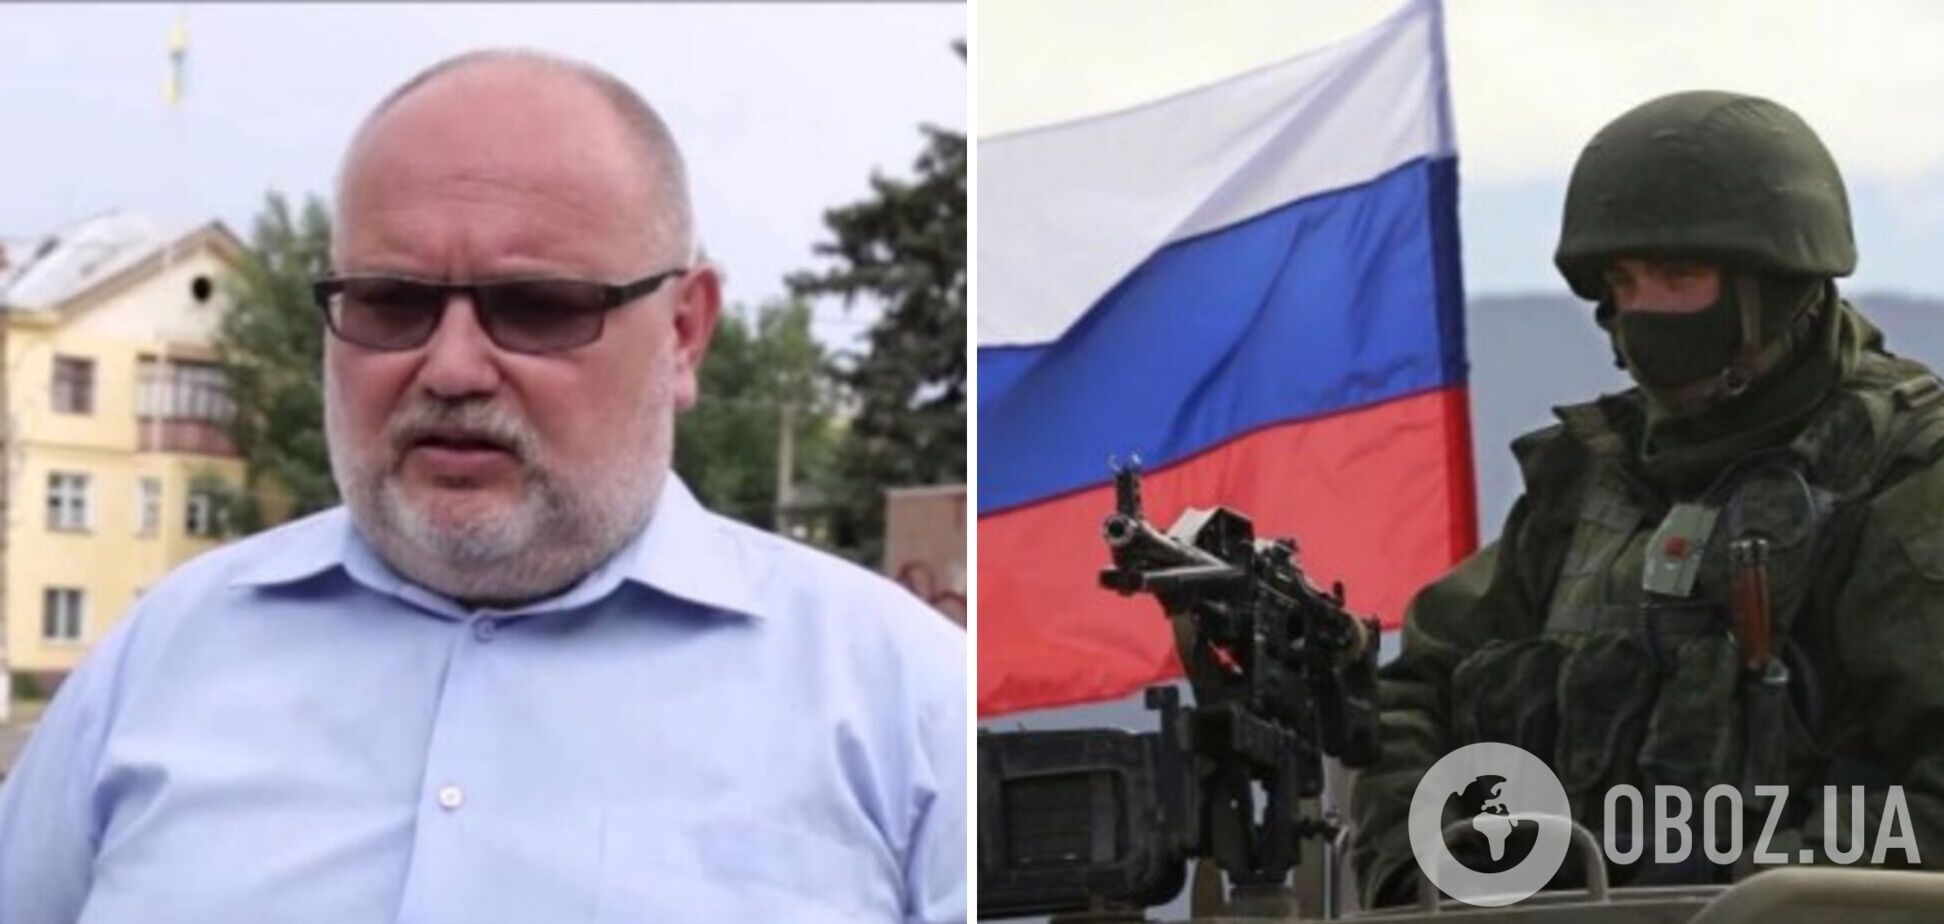 Российские оккупанты взяли в плен заместителя руководителя Счастьинской ВГА в Луганской области, - Гайдай